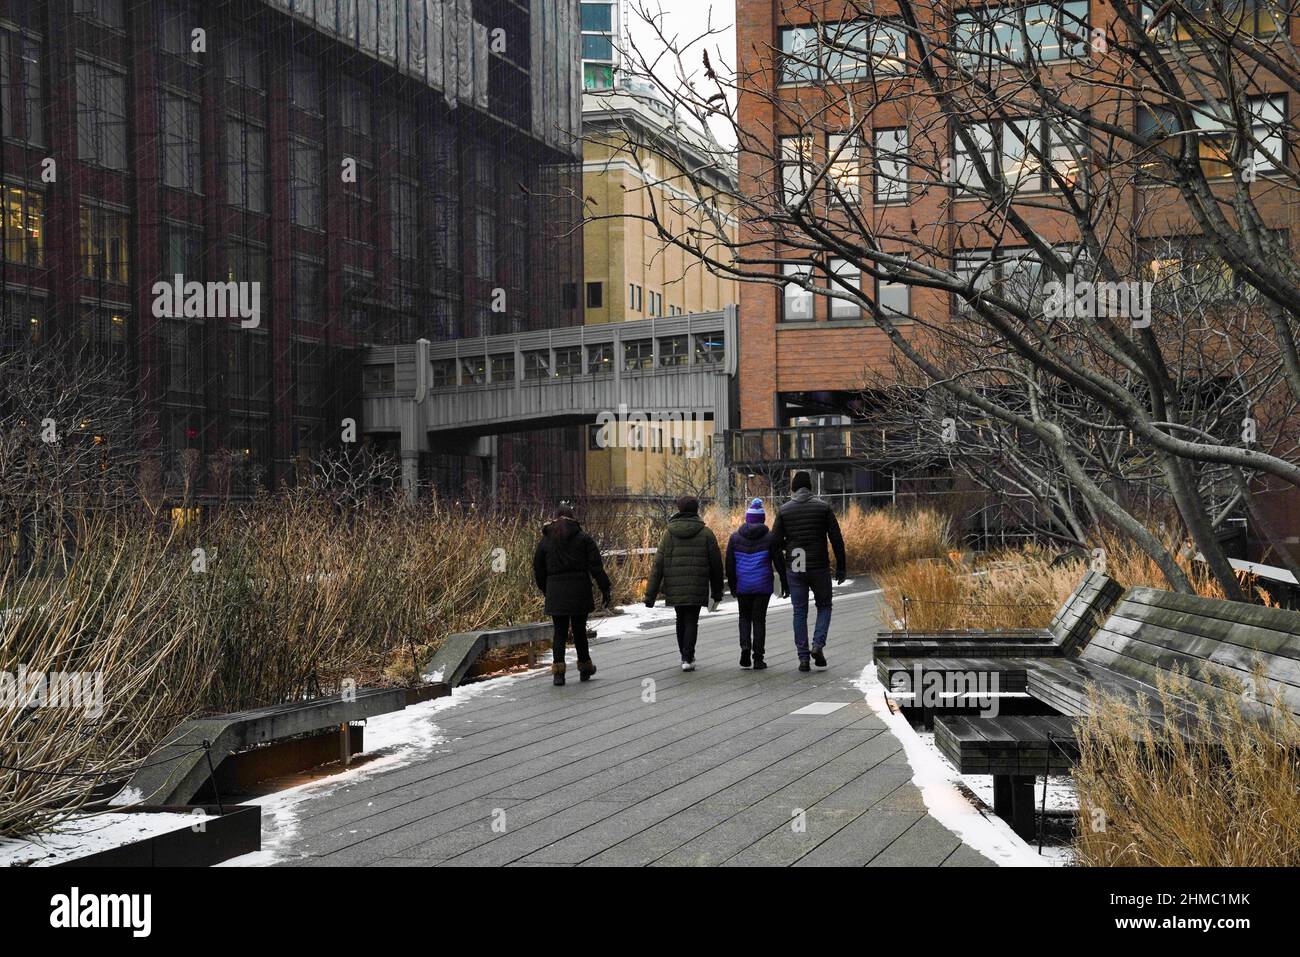 Persone che passeggiavano sulla High Line, un parco urbano sopraelevato sul viadotto ferroviario un tempo disutilizzato, sul lato ovest di Manhattan, New York. Foto Stock